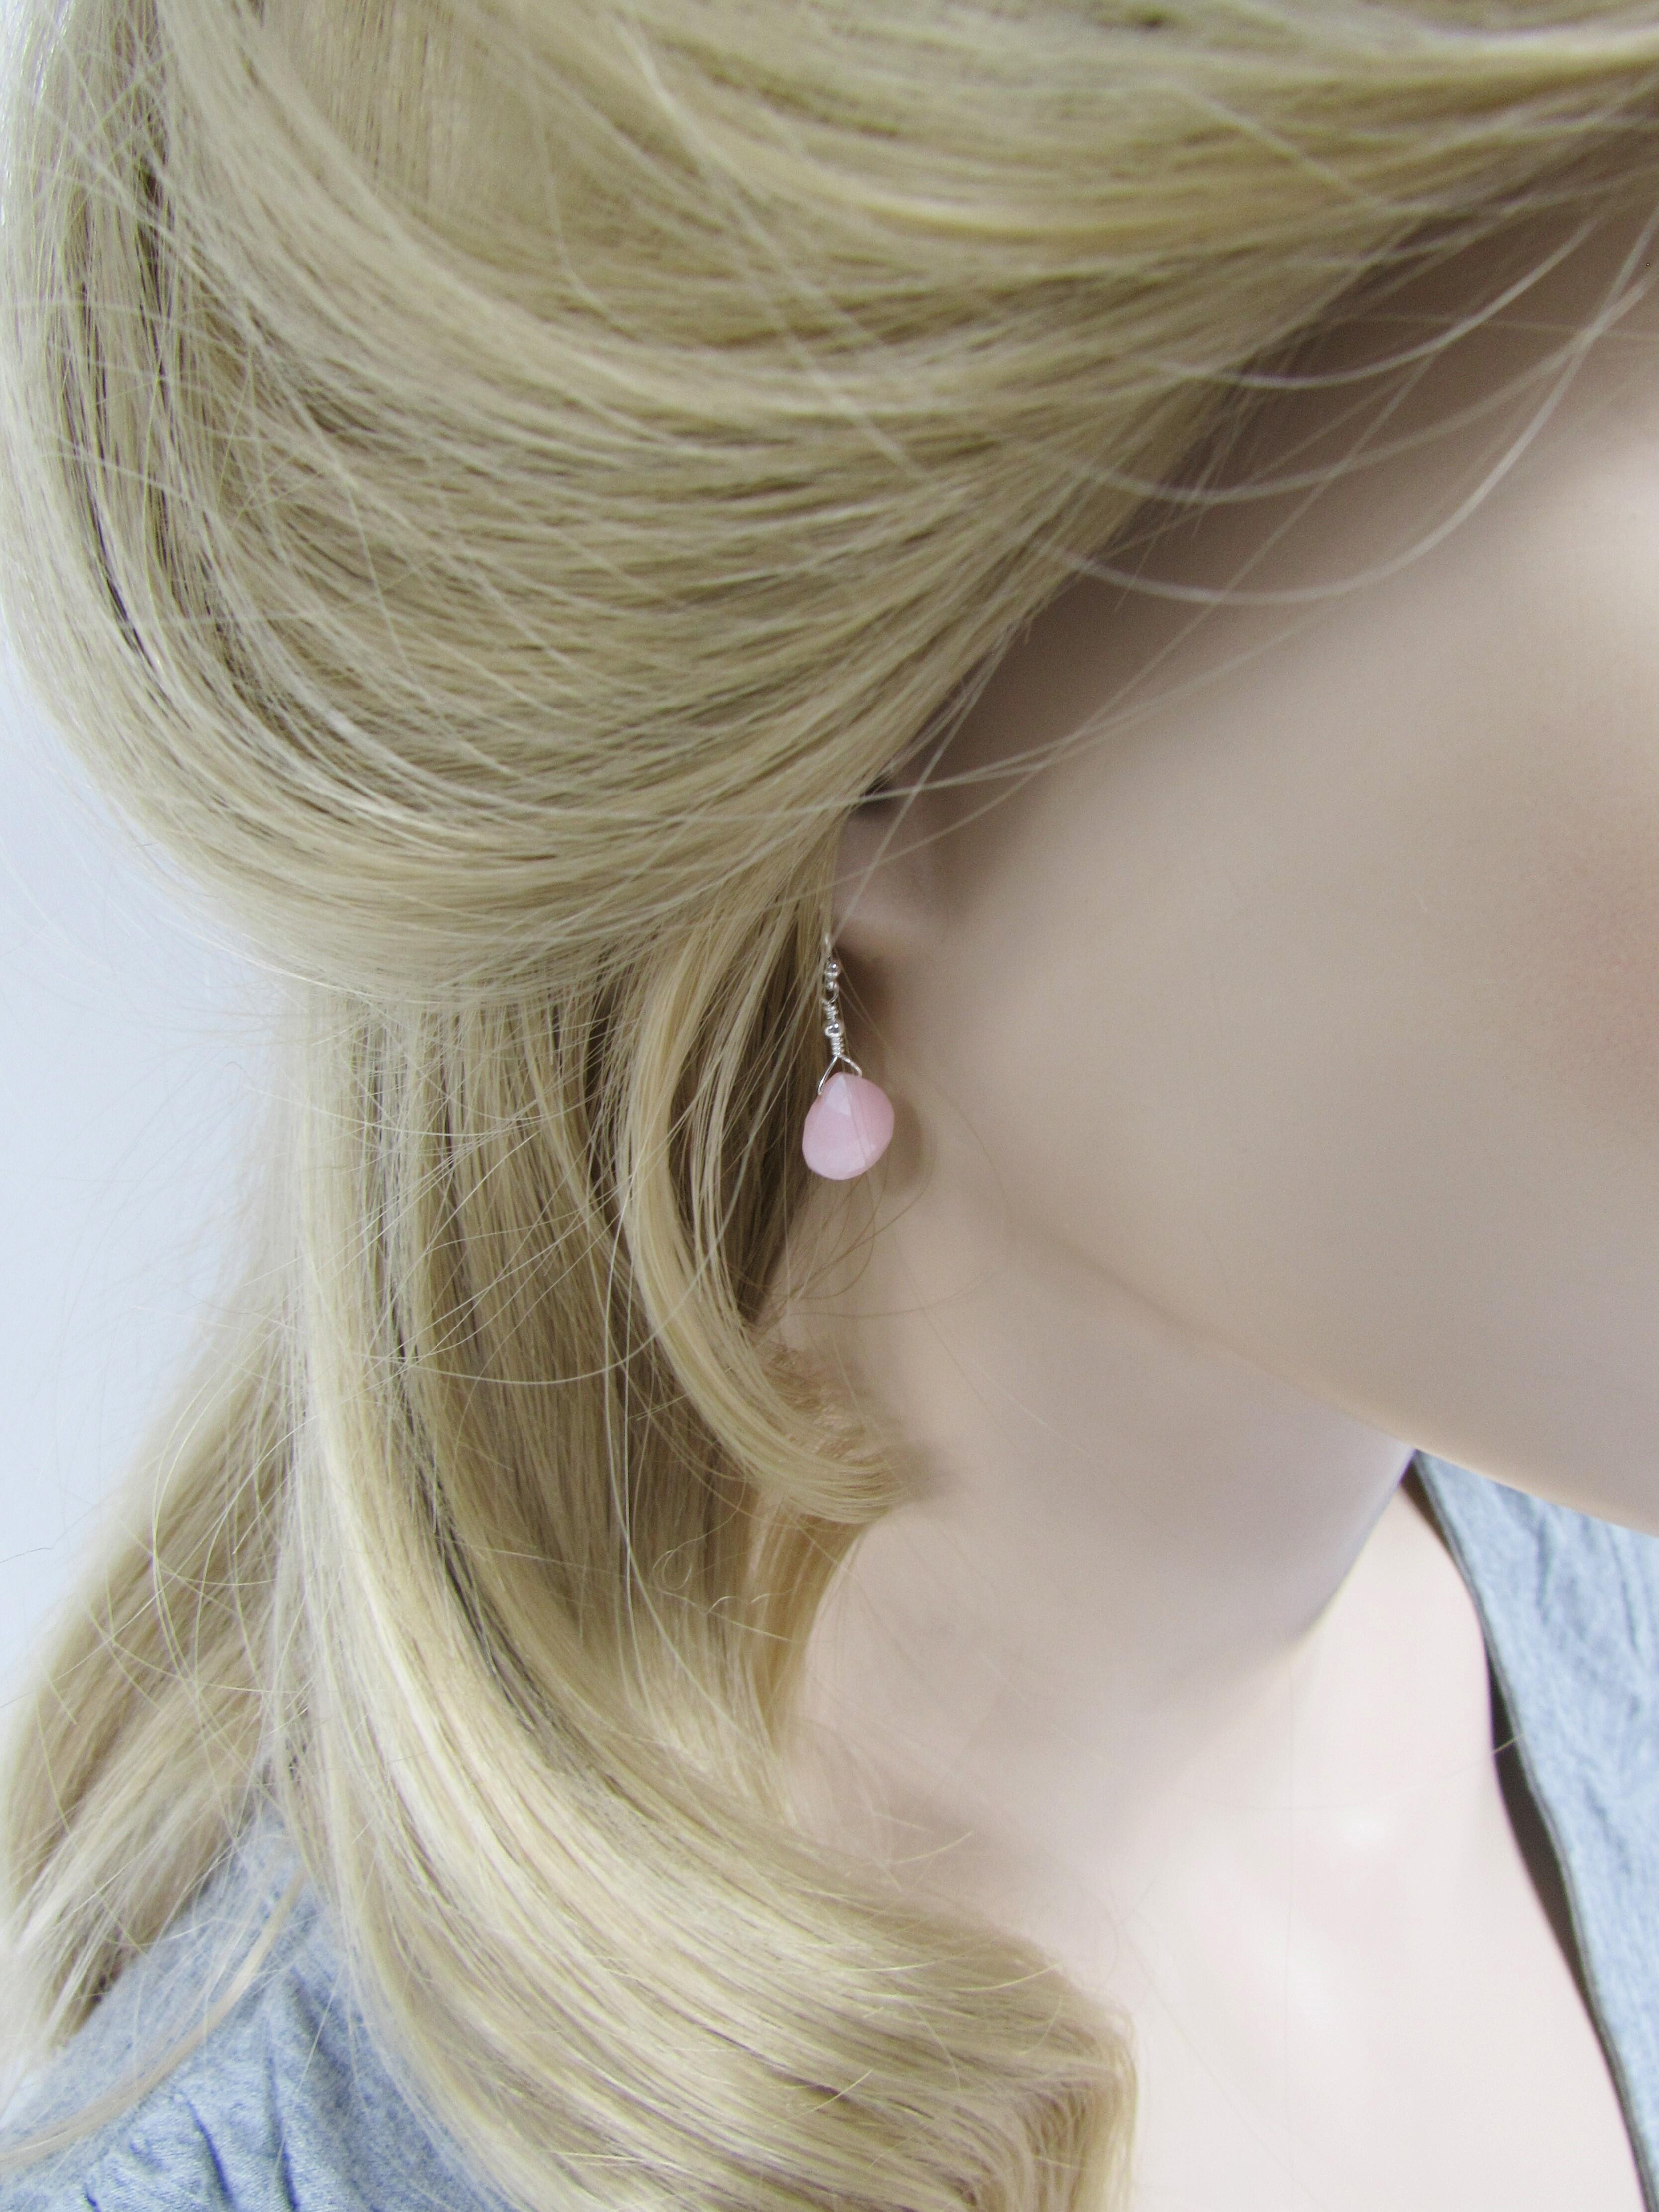 pink opal drop earrings